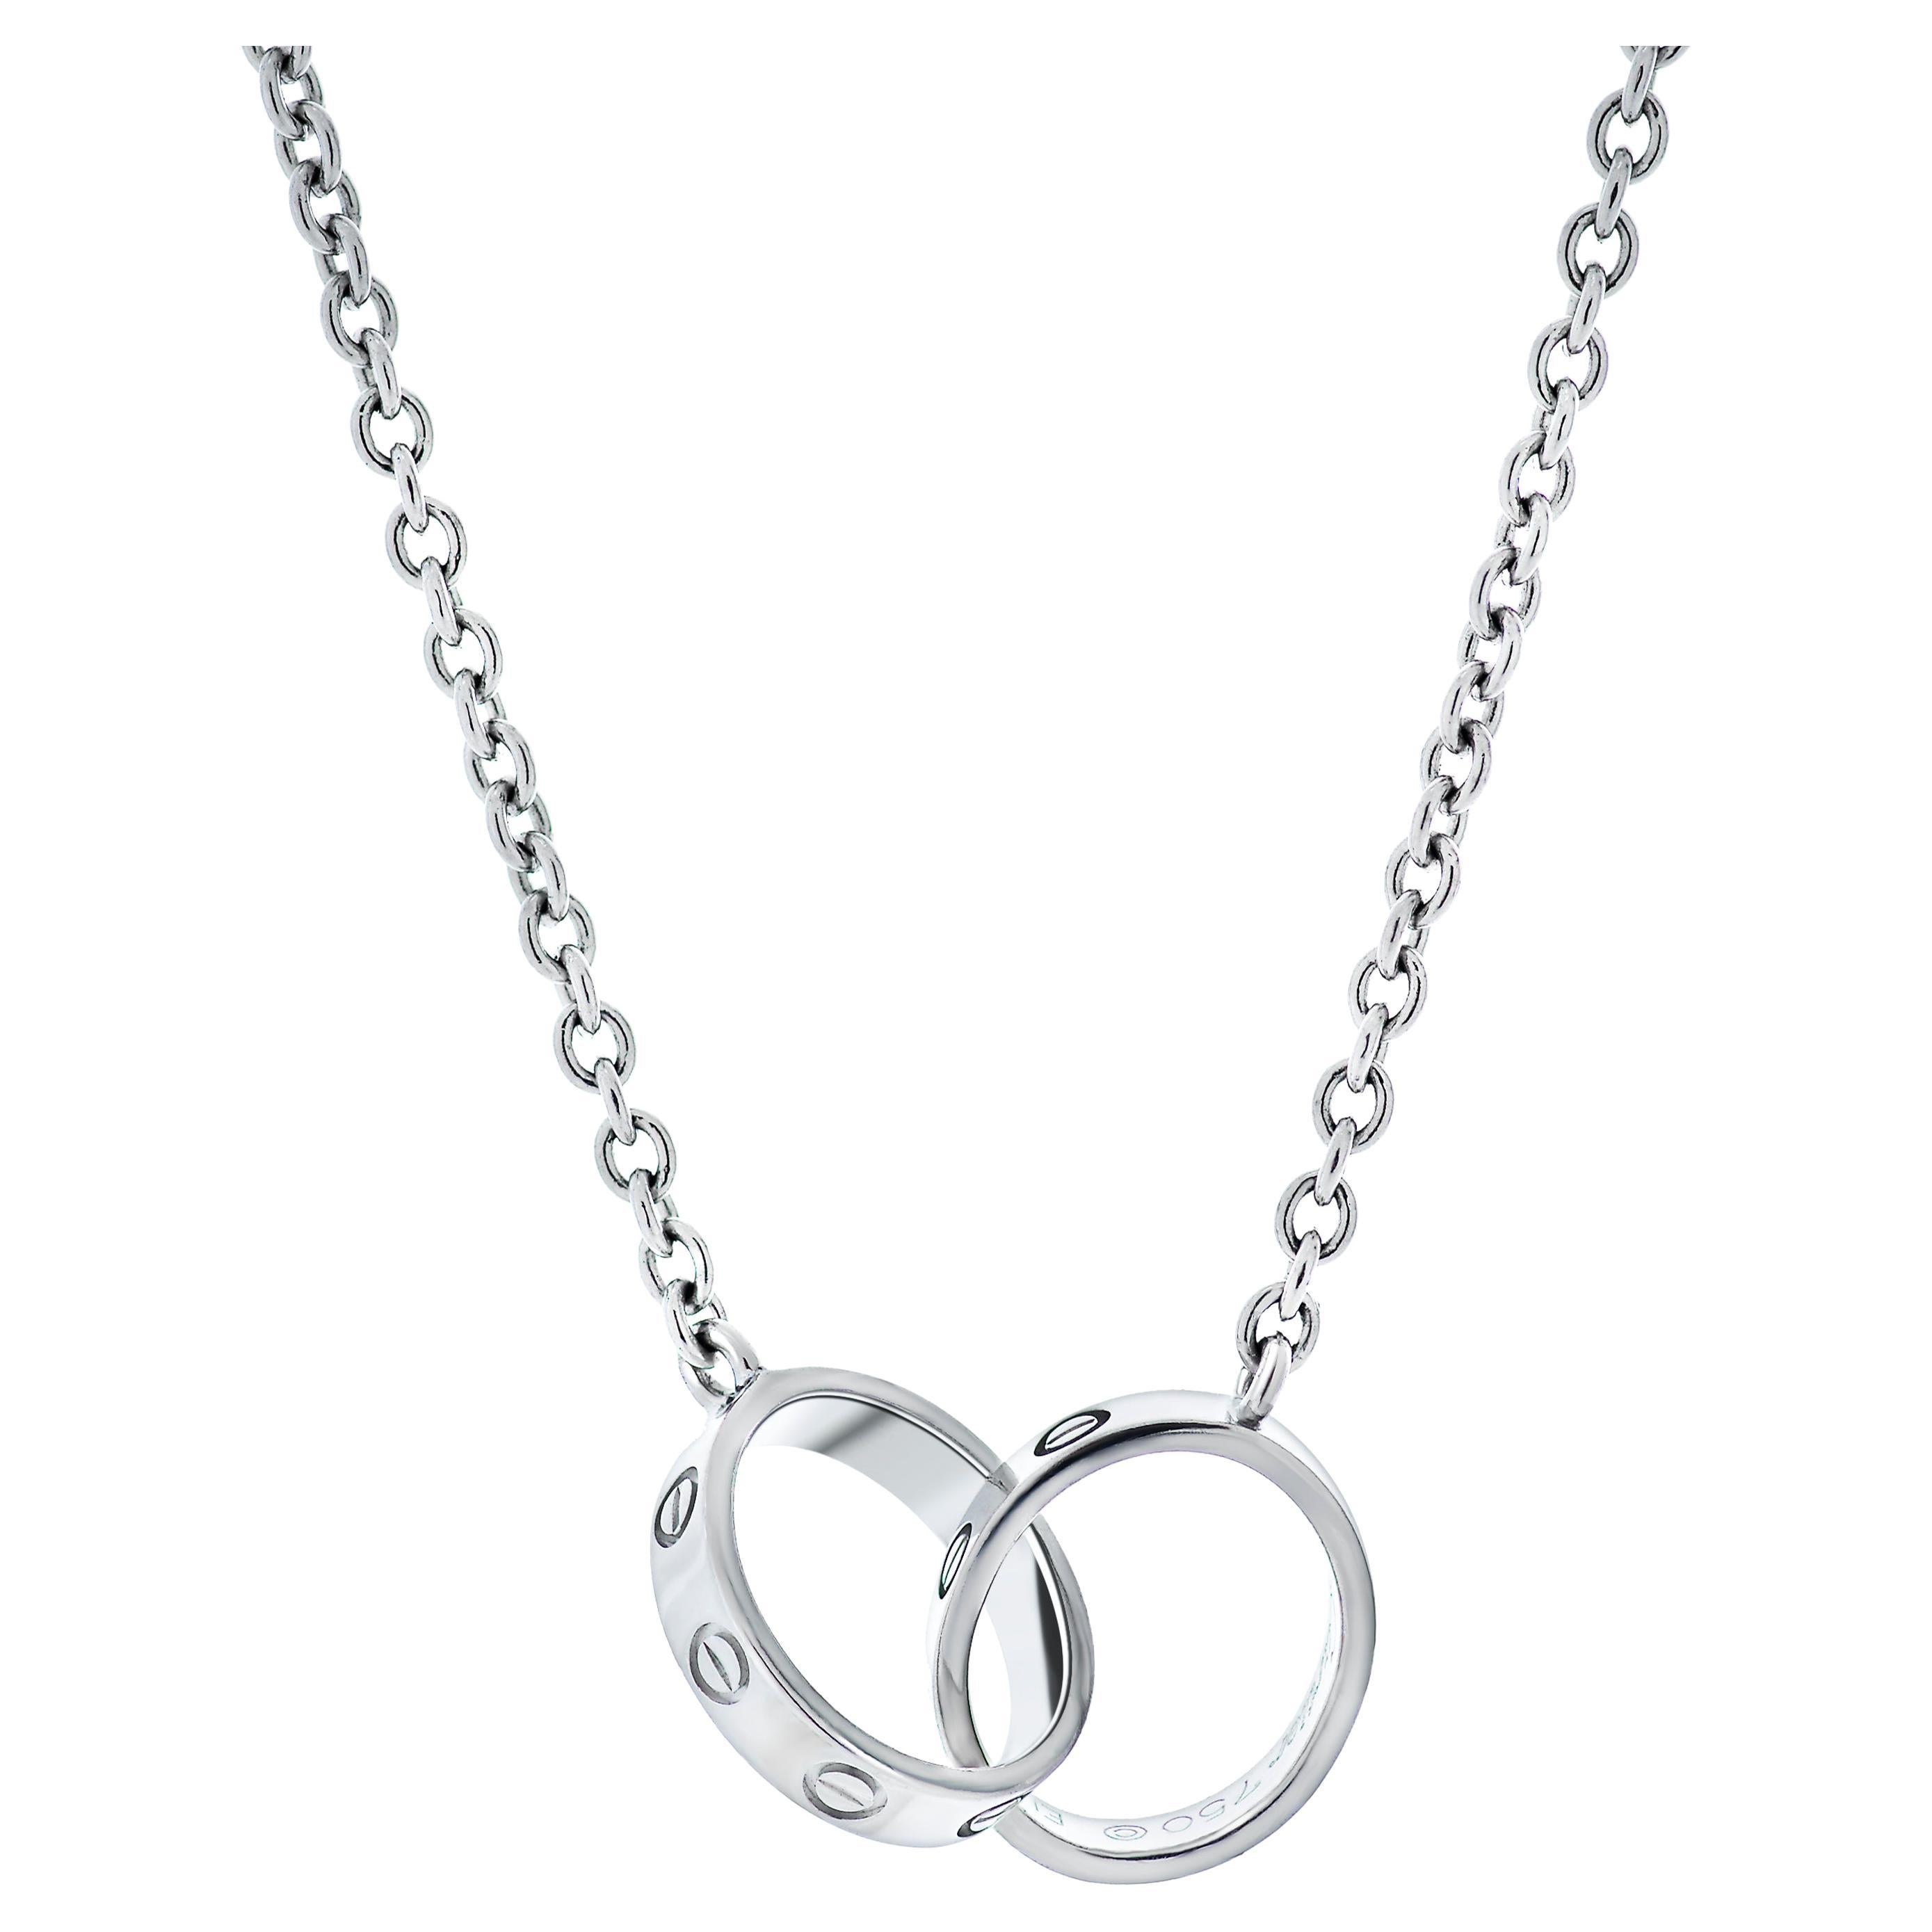 Cartier Interlocking Love Necklace in 18k White Gold